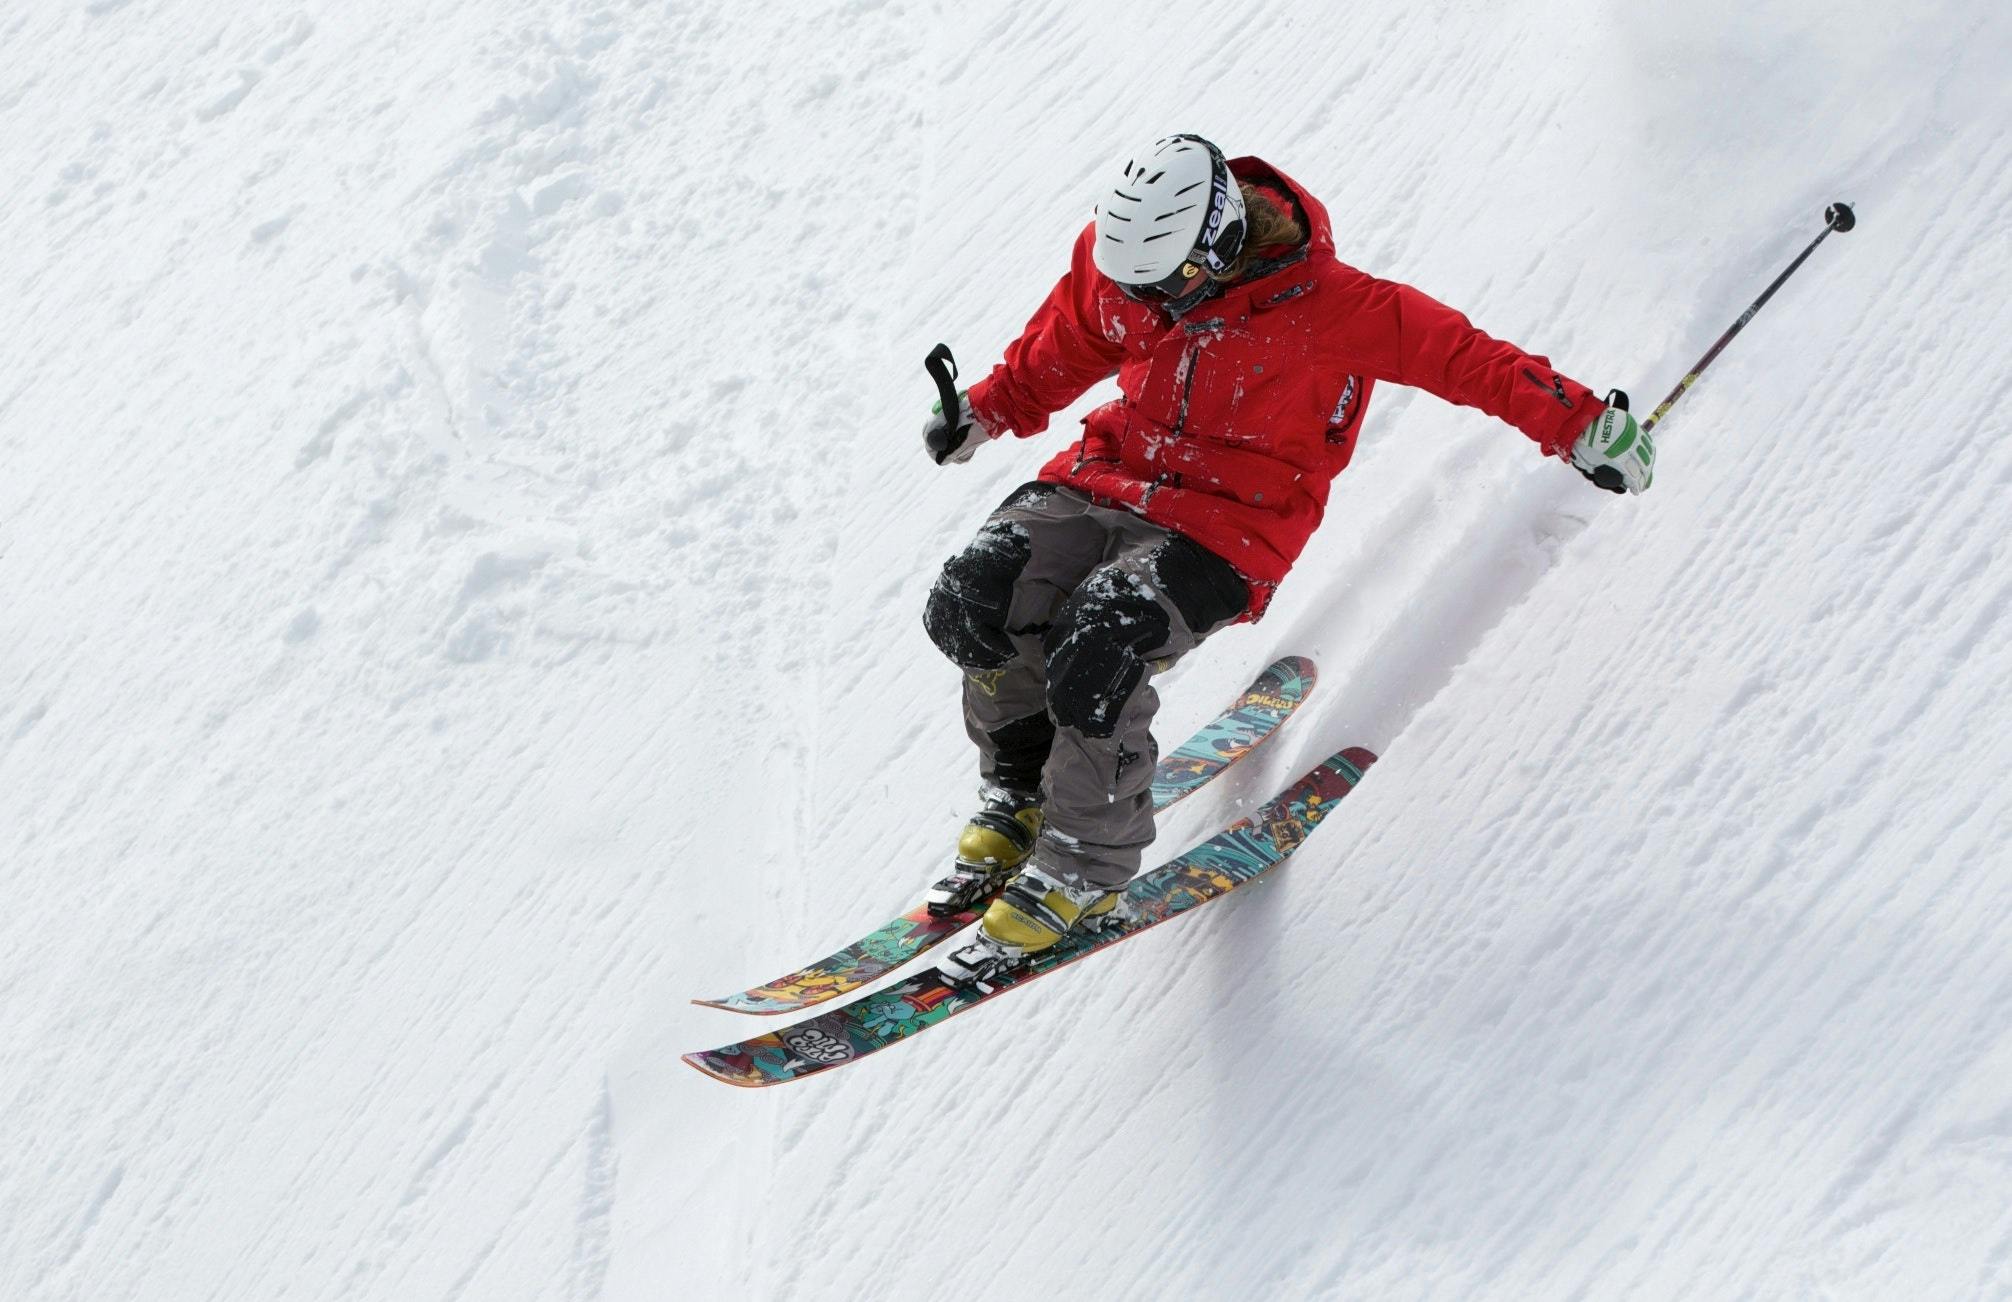 Skier skiing fast down steep slope